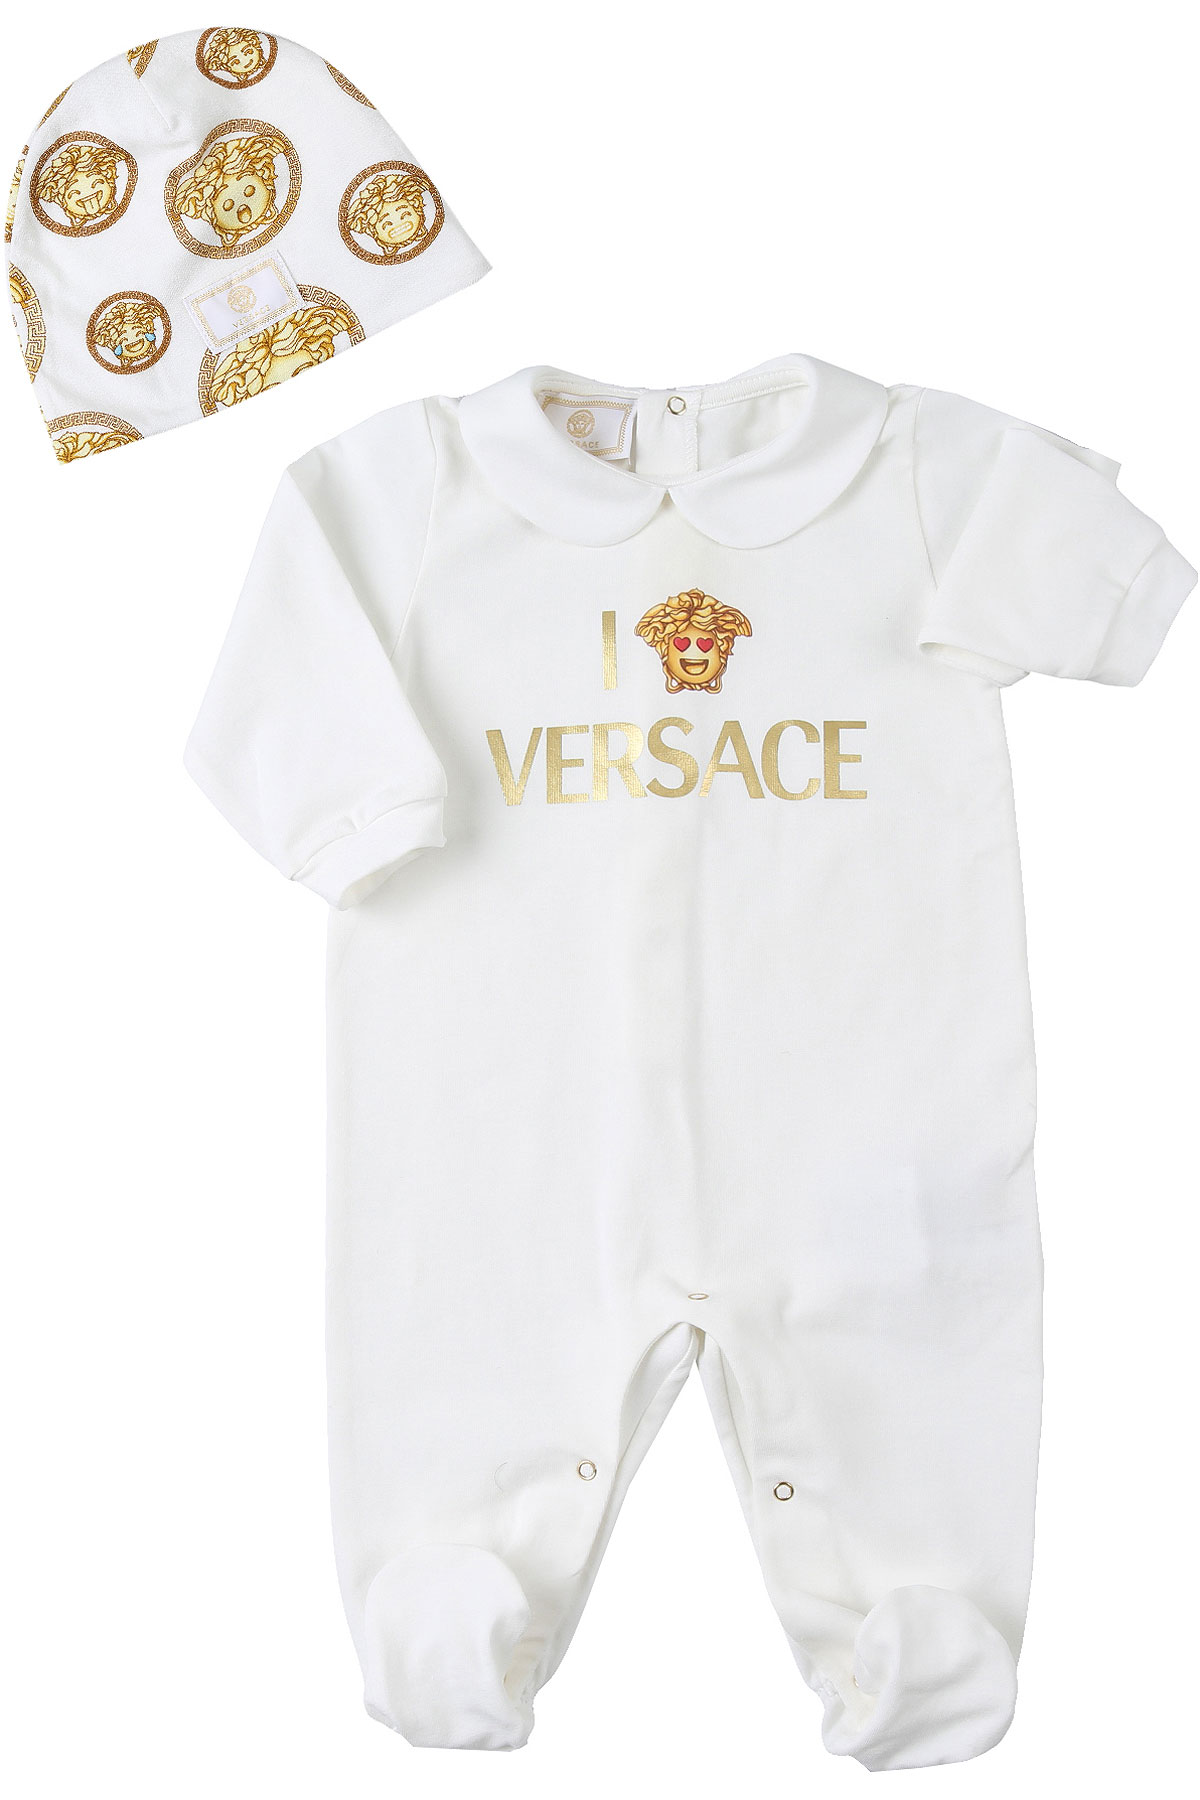 Versace Baby Set für Jungen Günstig im Sale, Weiss, Baumwolle, 2017, 3M 6M